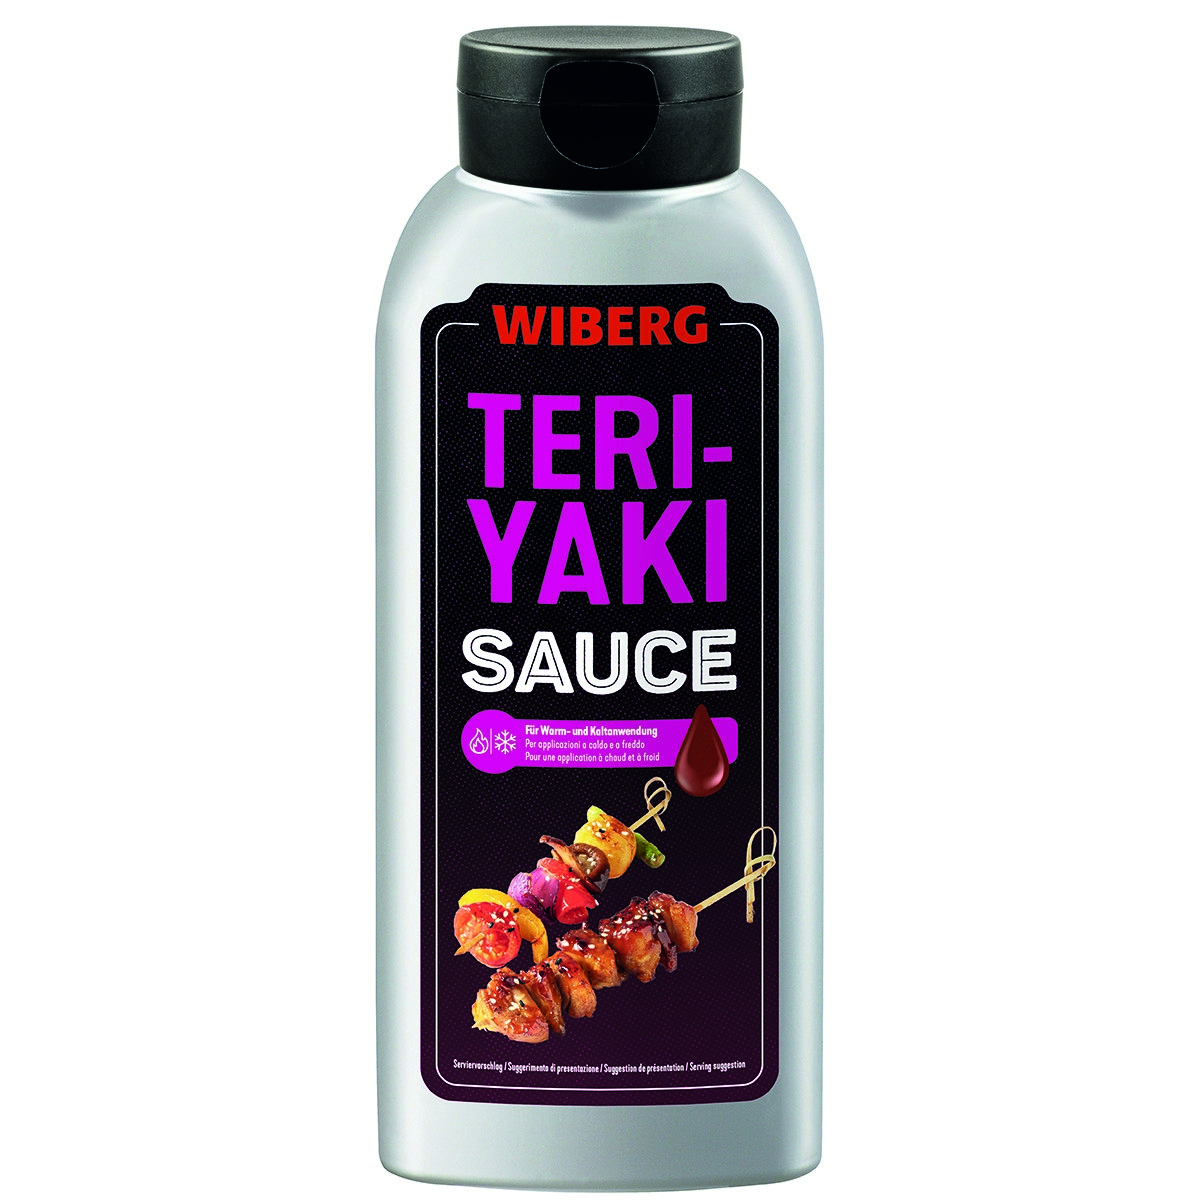 WIBERG Teriyaki Sauce